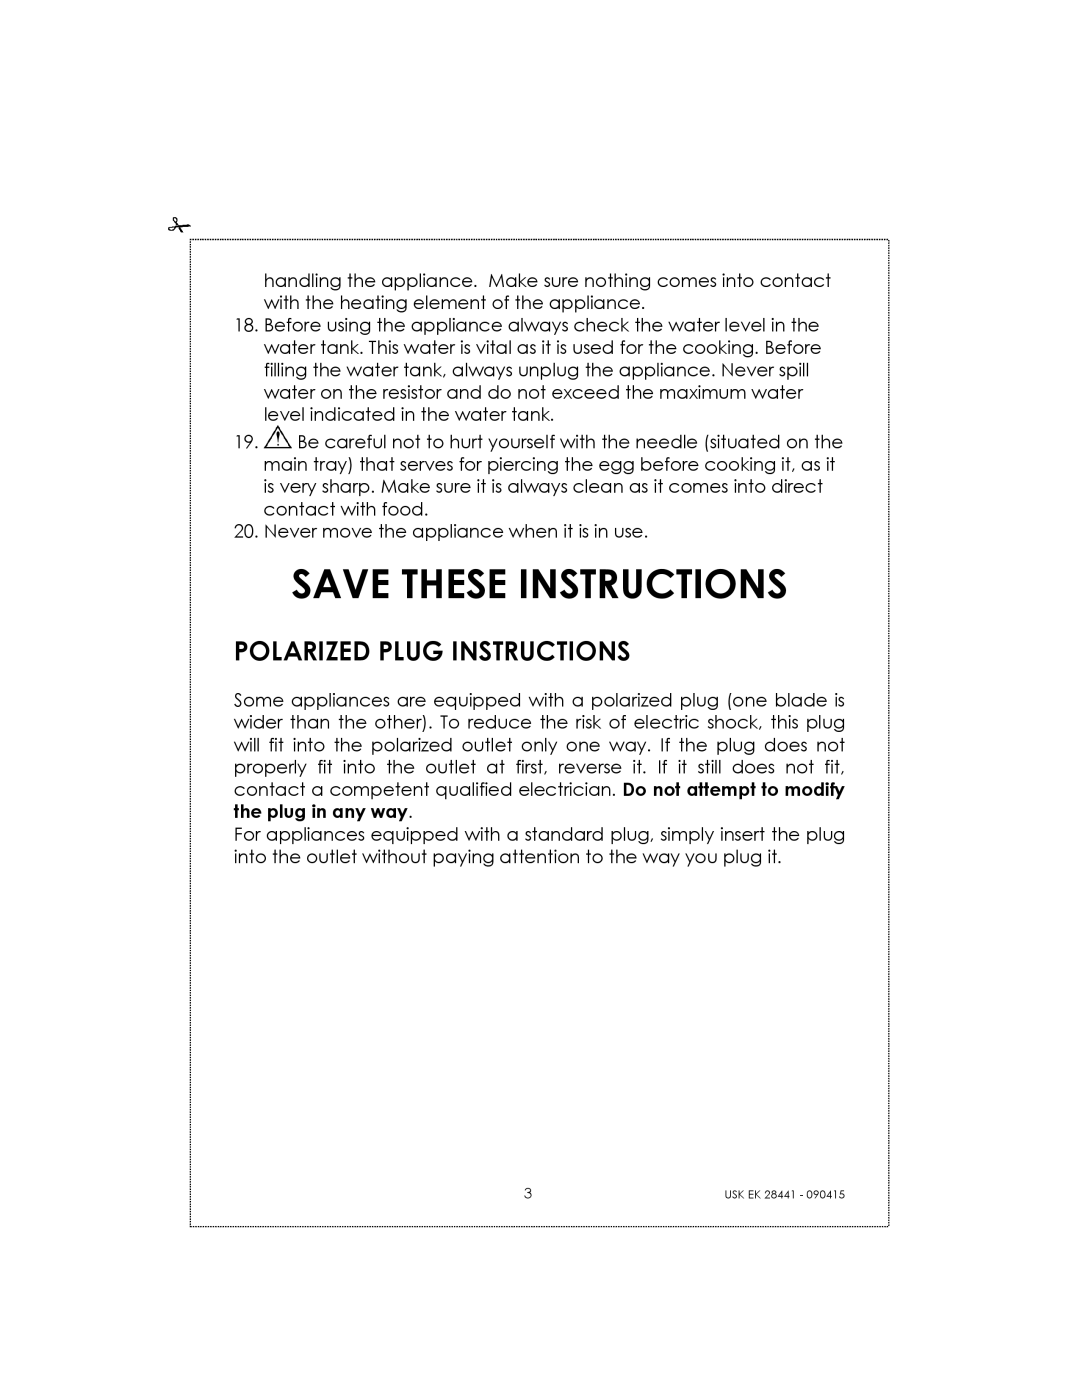 Kalorik USK EK 28441 manual Save These Instructions, Polarized Plug Instructions 